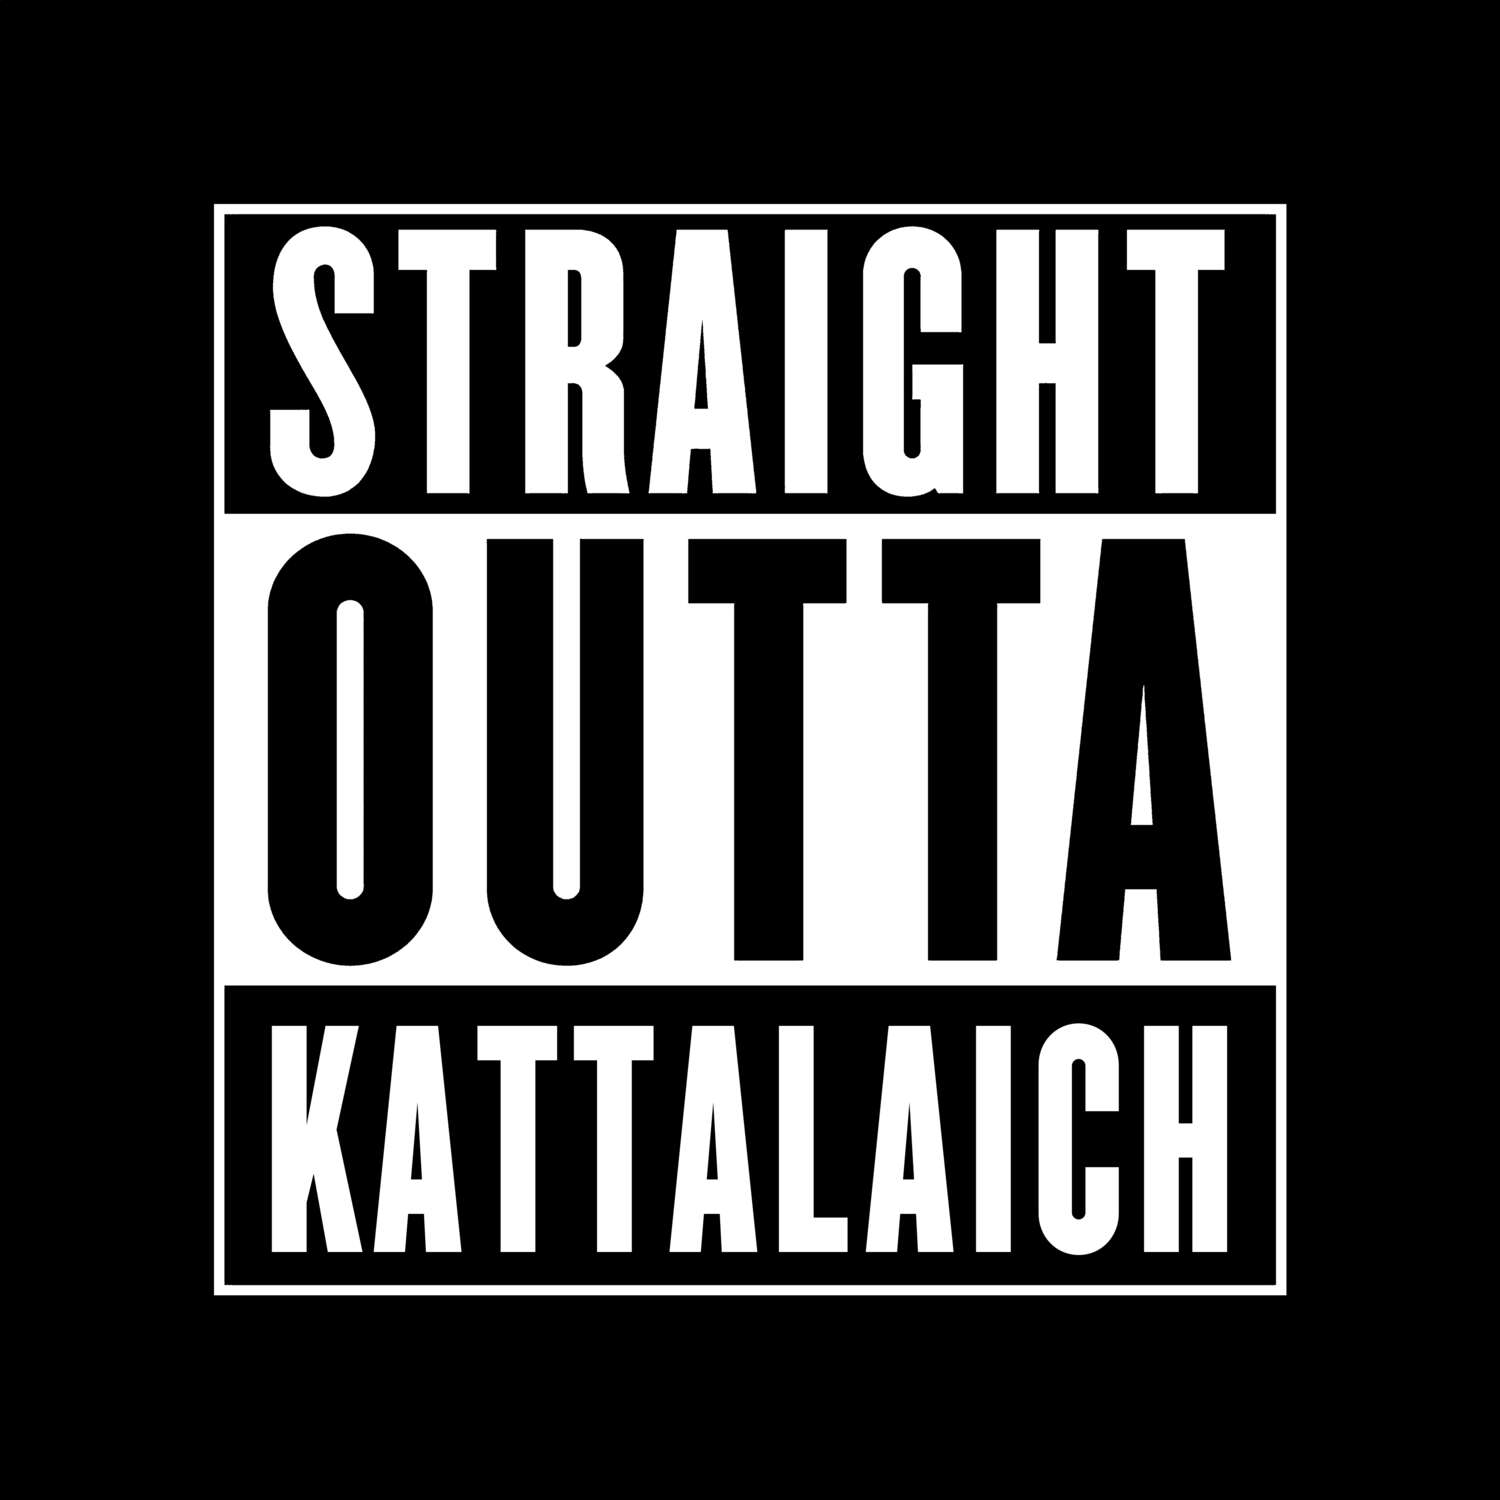 Kattalaich T-Shirt »Straight Outta«